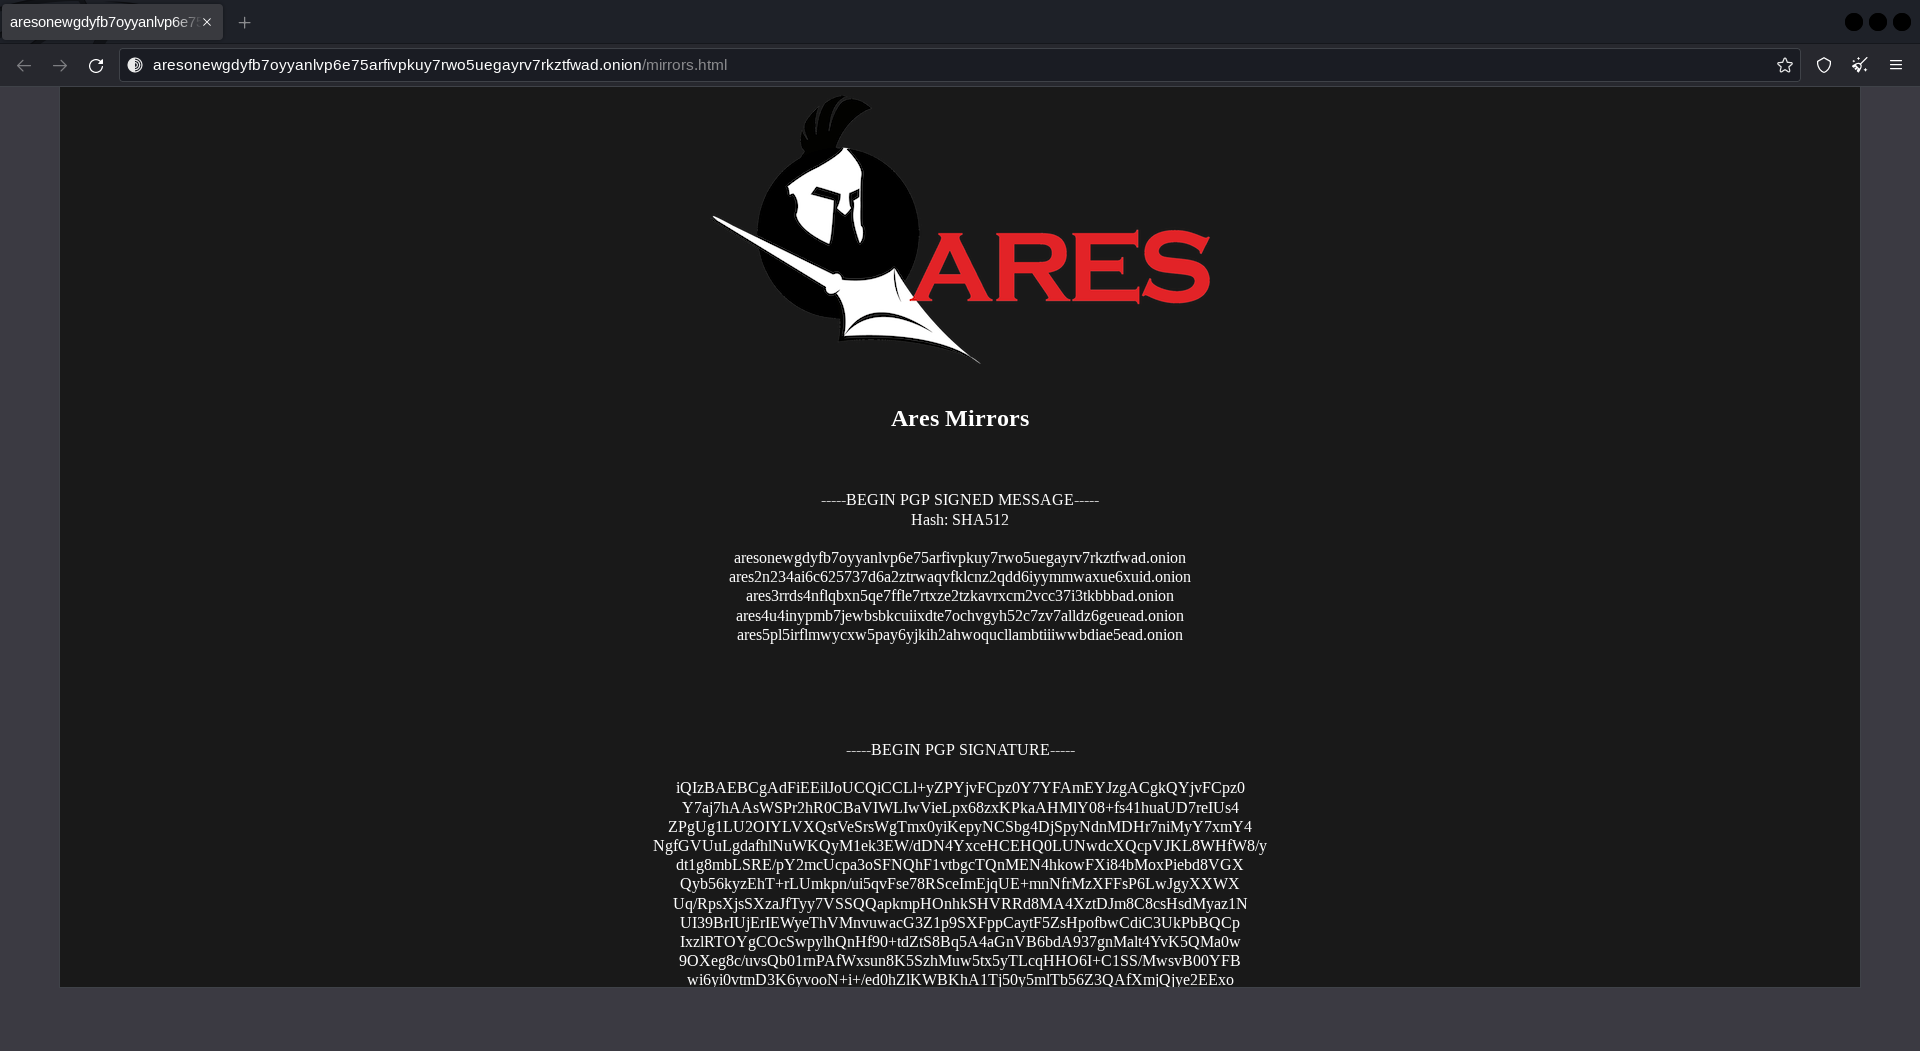 Ares darknet market working